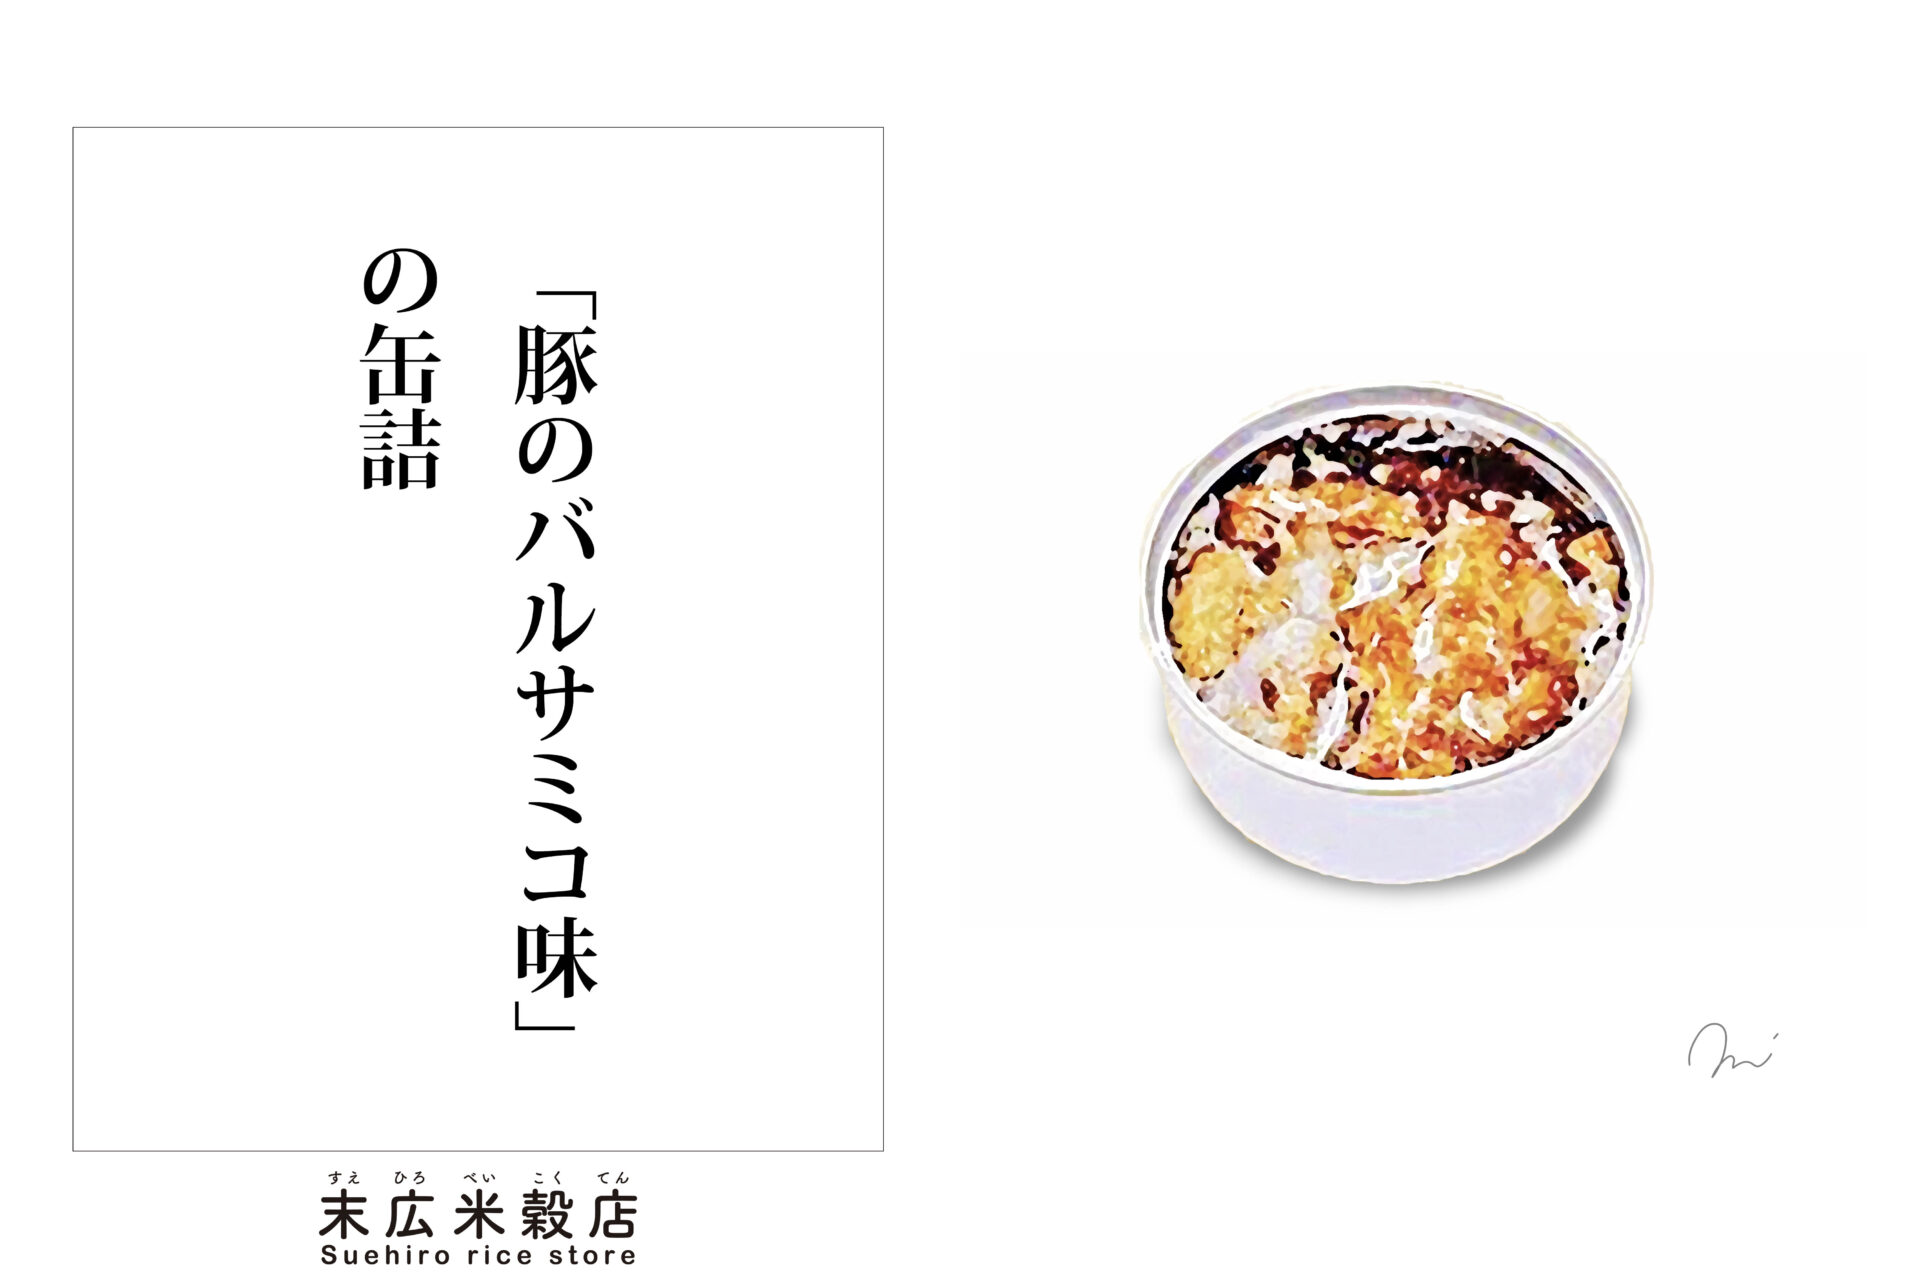 ご飯にピッタリ缶詰シリーズ「豚のバルサミコ味」の缶詰